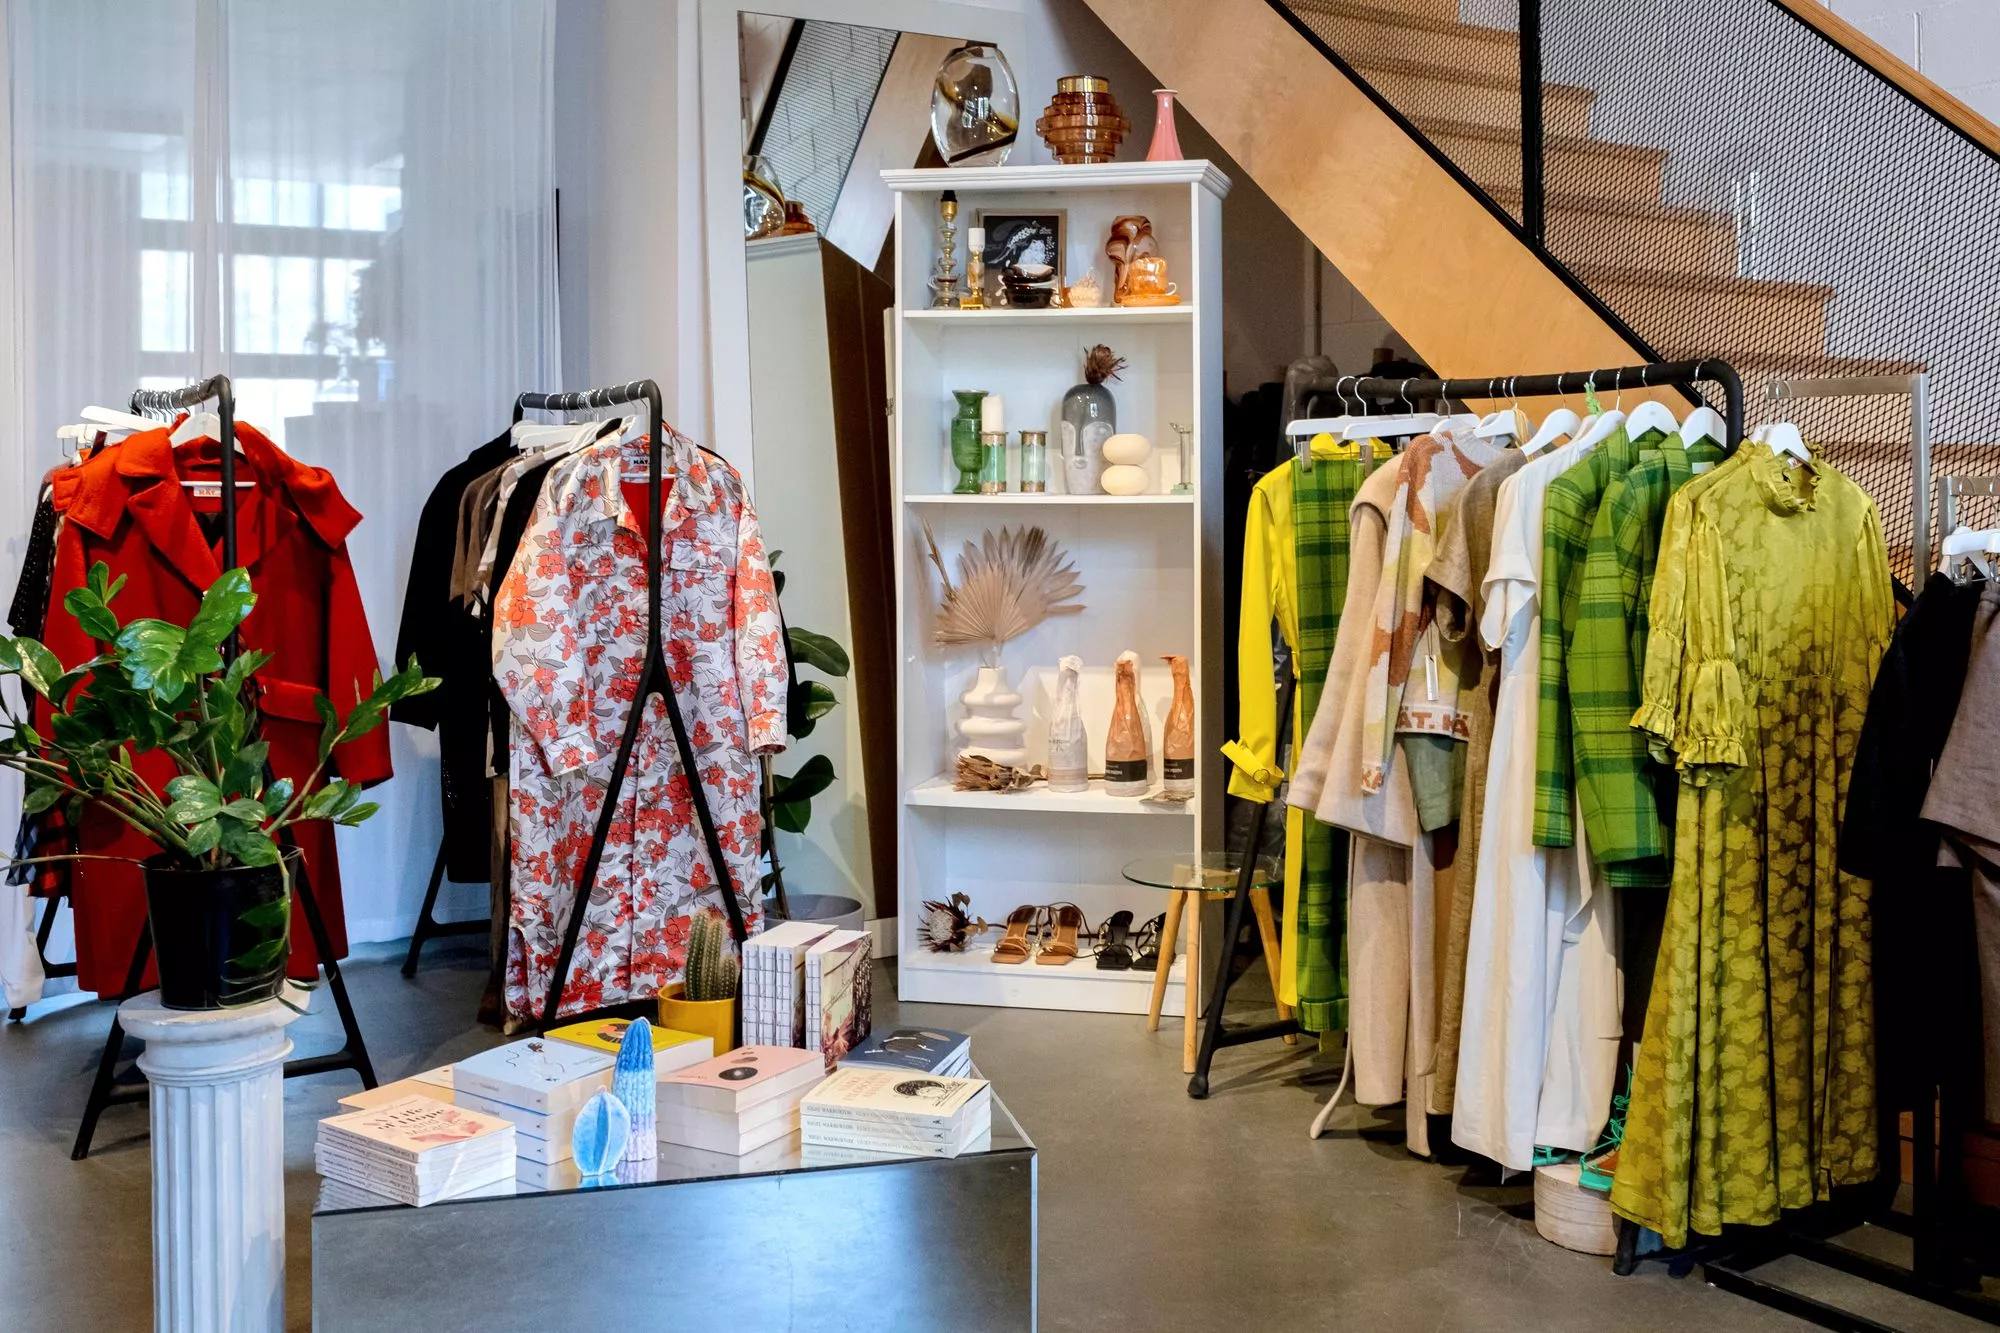 Tallinna ja ostokset: KÄT Creative Studiossa Koplissa myydään nuorten tallinnalaissuunnittelijoiden vaatteita ja tyyliin sopivia pieniä sisustusesineitä ja kirjoja.